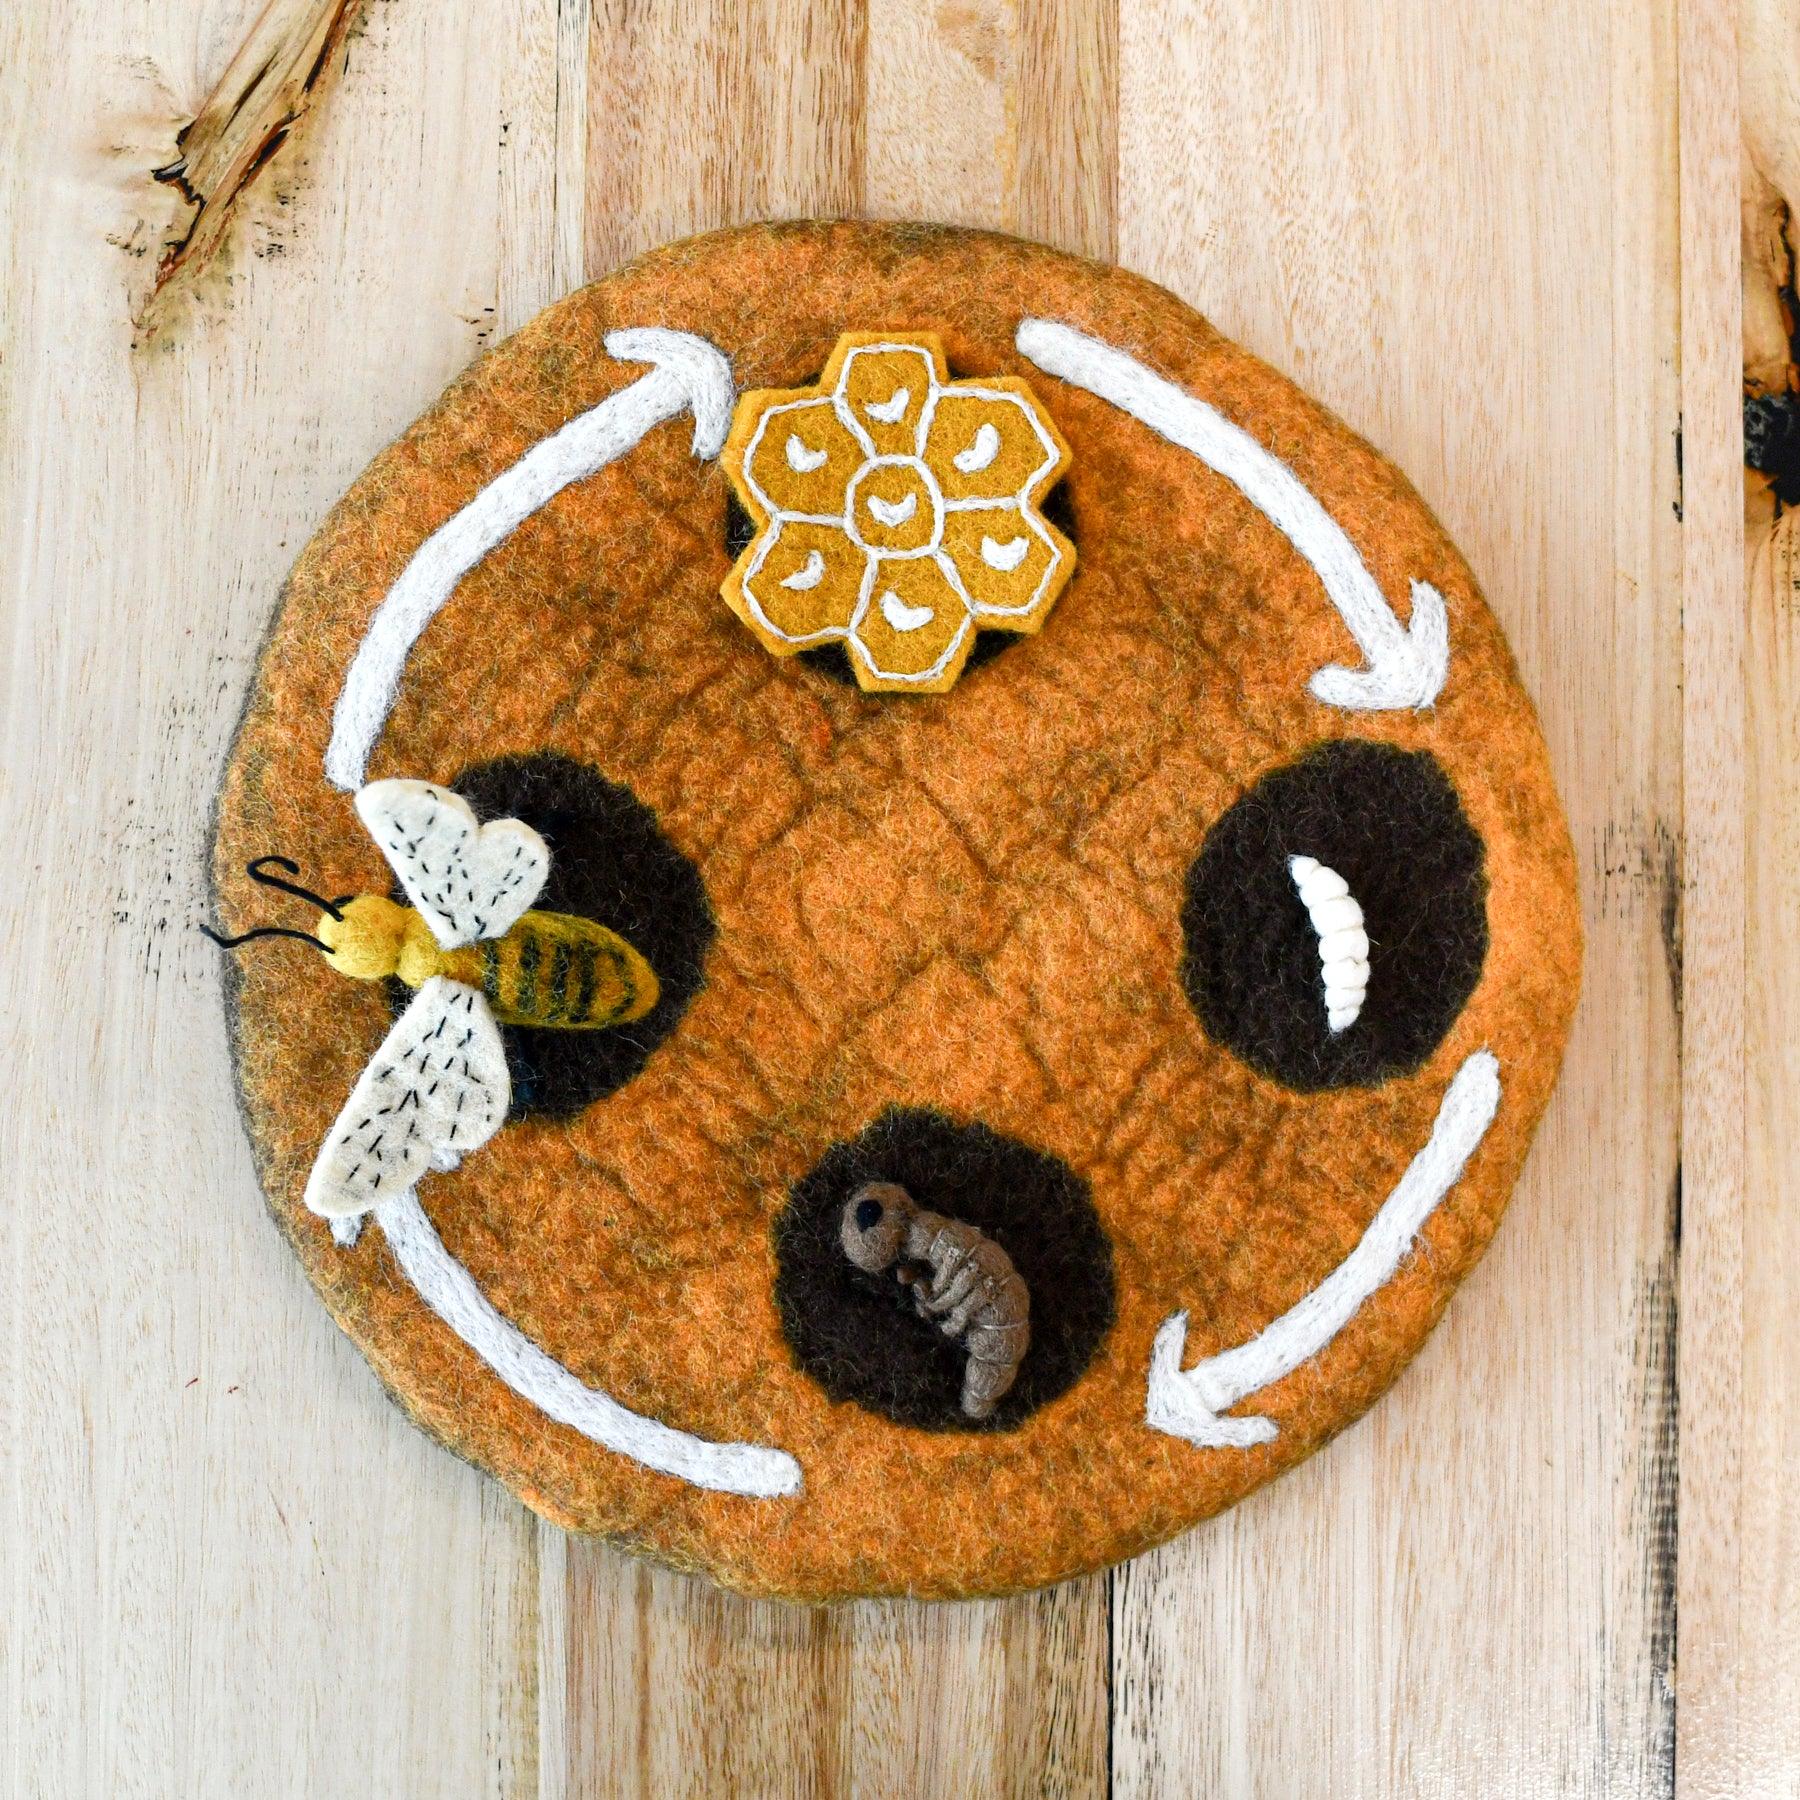 Felt Lifecycle of a Honey Bee - Tara Treasures